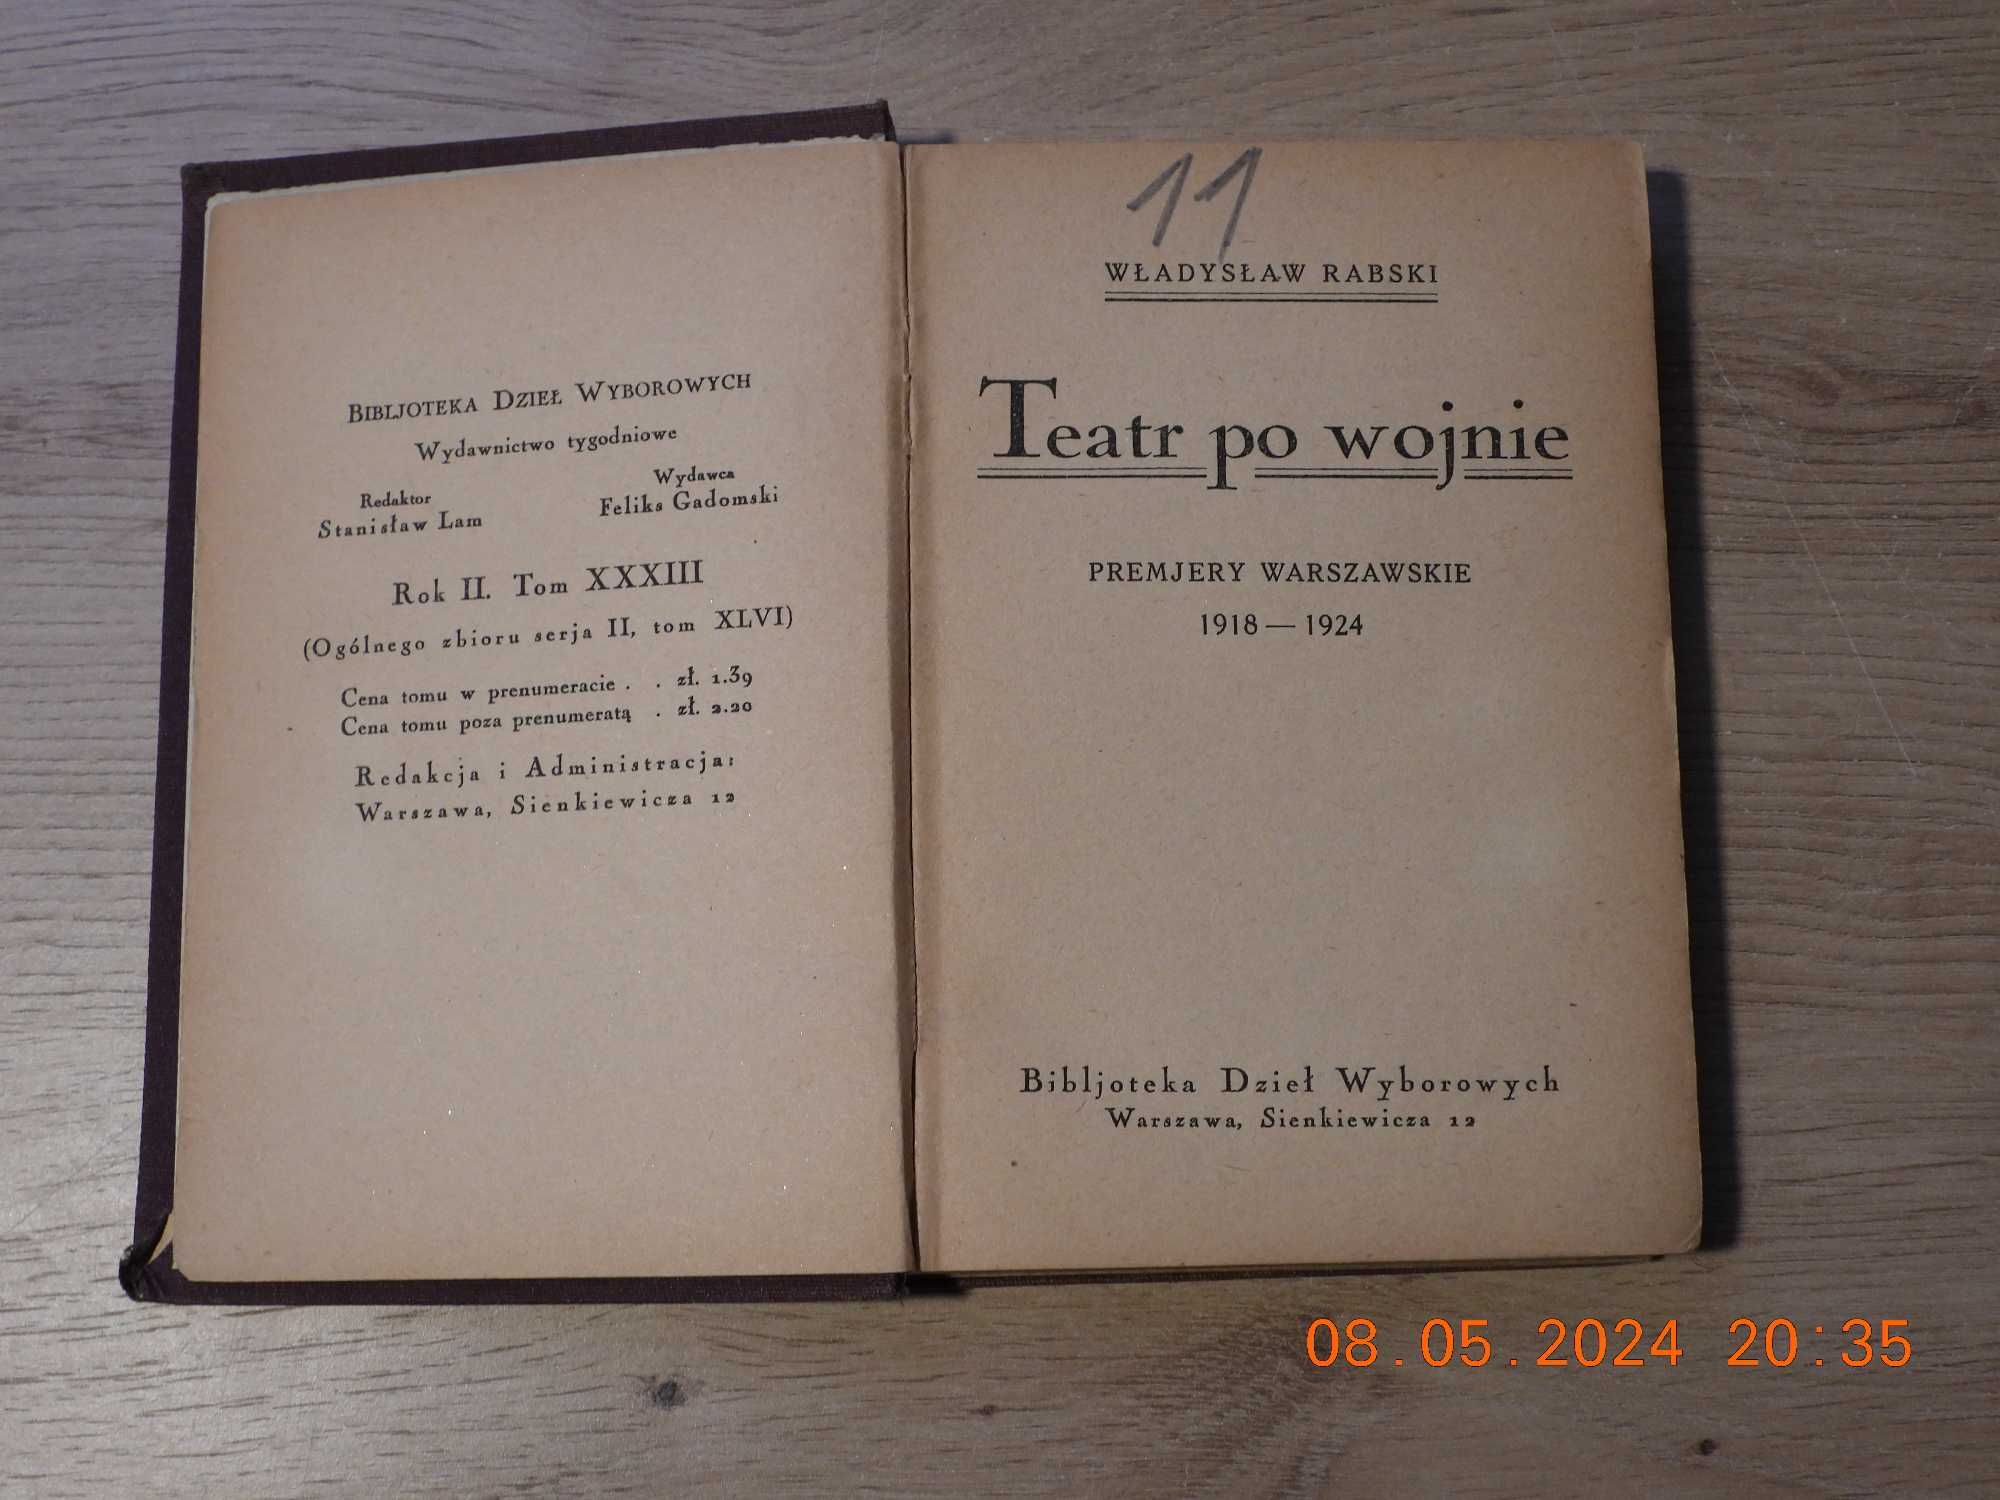 Teatr po wojnie ; premjery warszawskie 1918:1924  W. Rabski. wyd.1925r